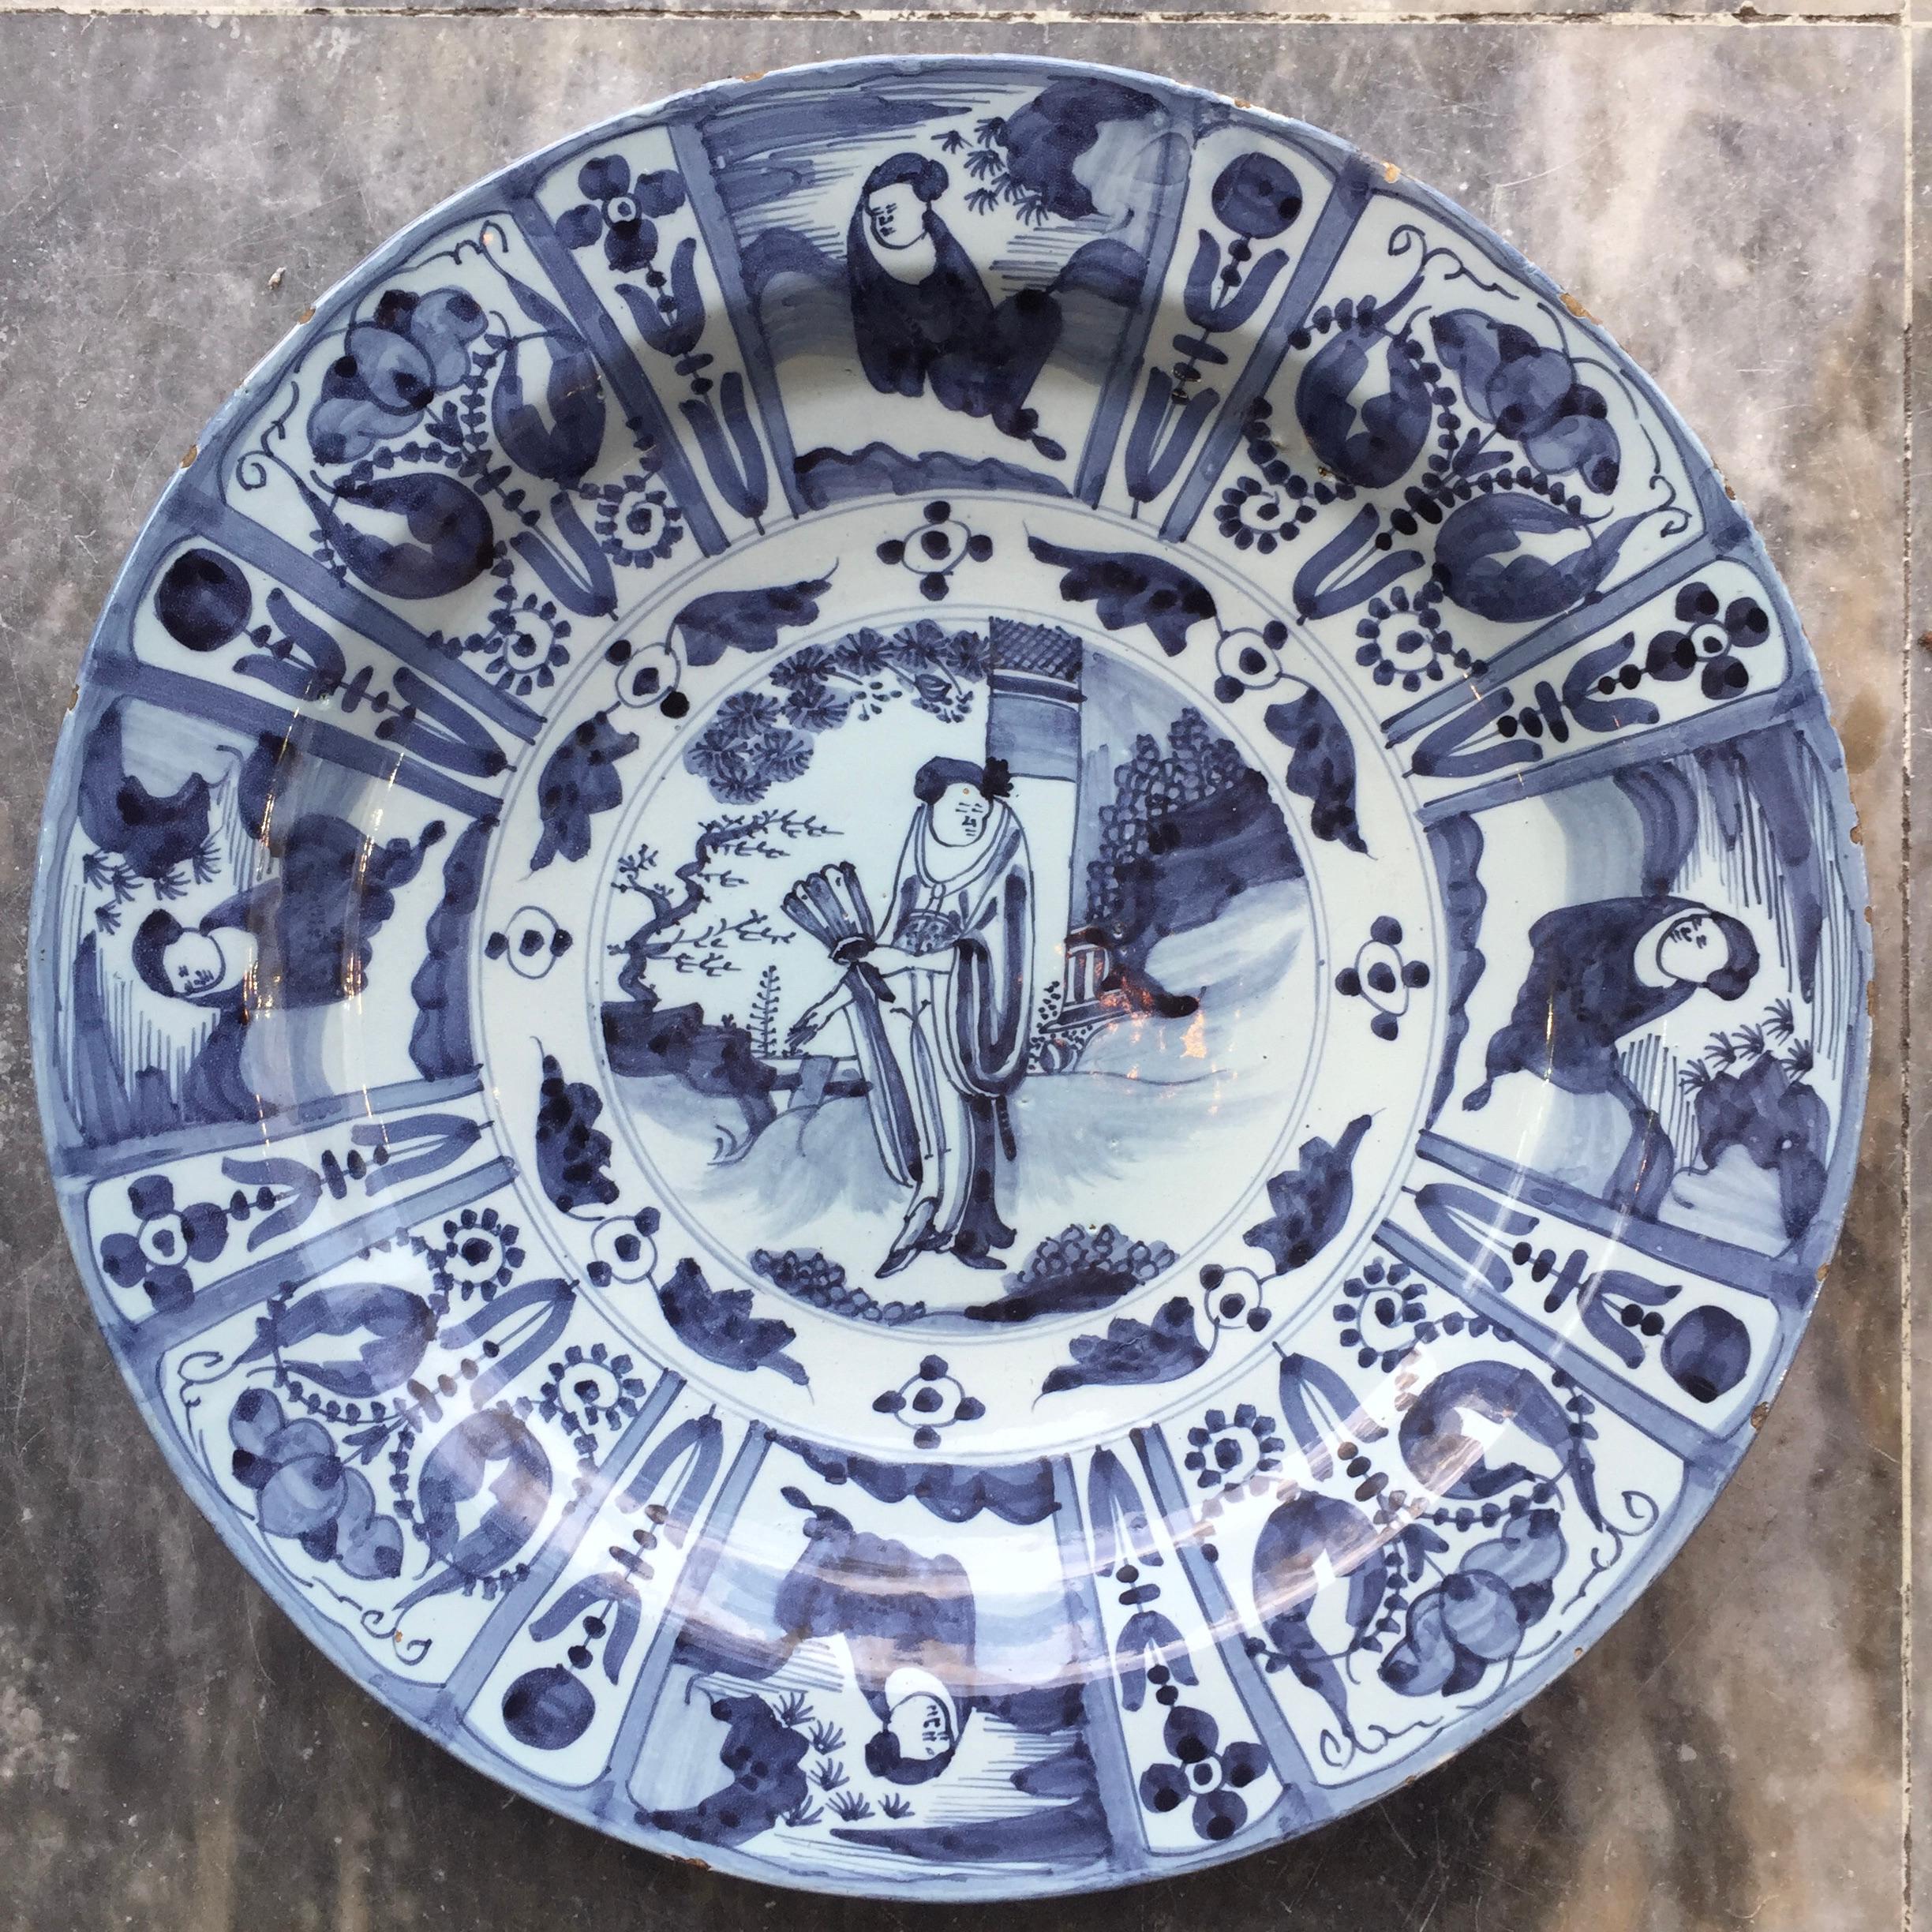 Ville : Delft
Atelier : Inconnu
Date : Dernier quart du XVIIe siècle

Grande assiette bleue et blanche de style Whiting / Tianqi
Décorée de Long Eliza au centre, entourée de huit cartouches avec des fleurs et des personnages.
Copie exacte des